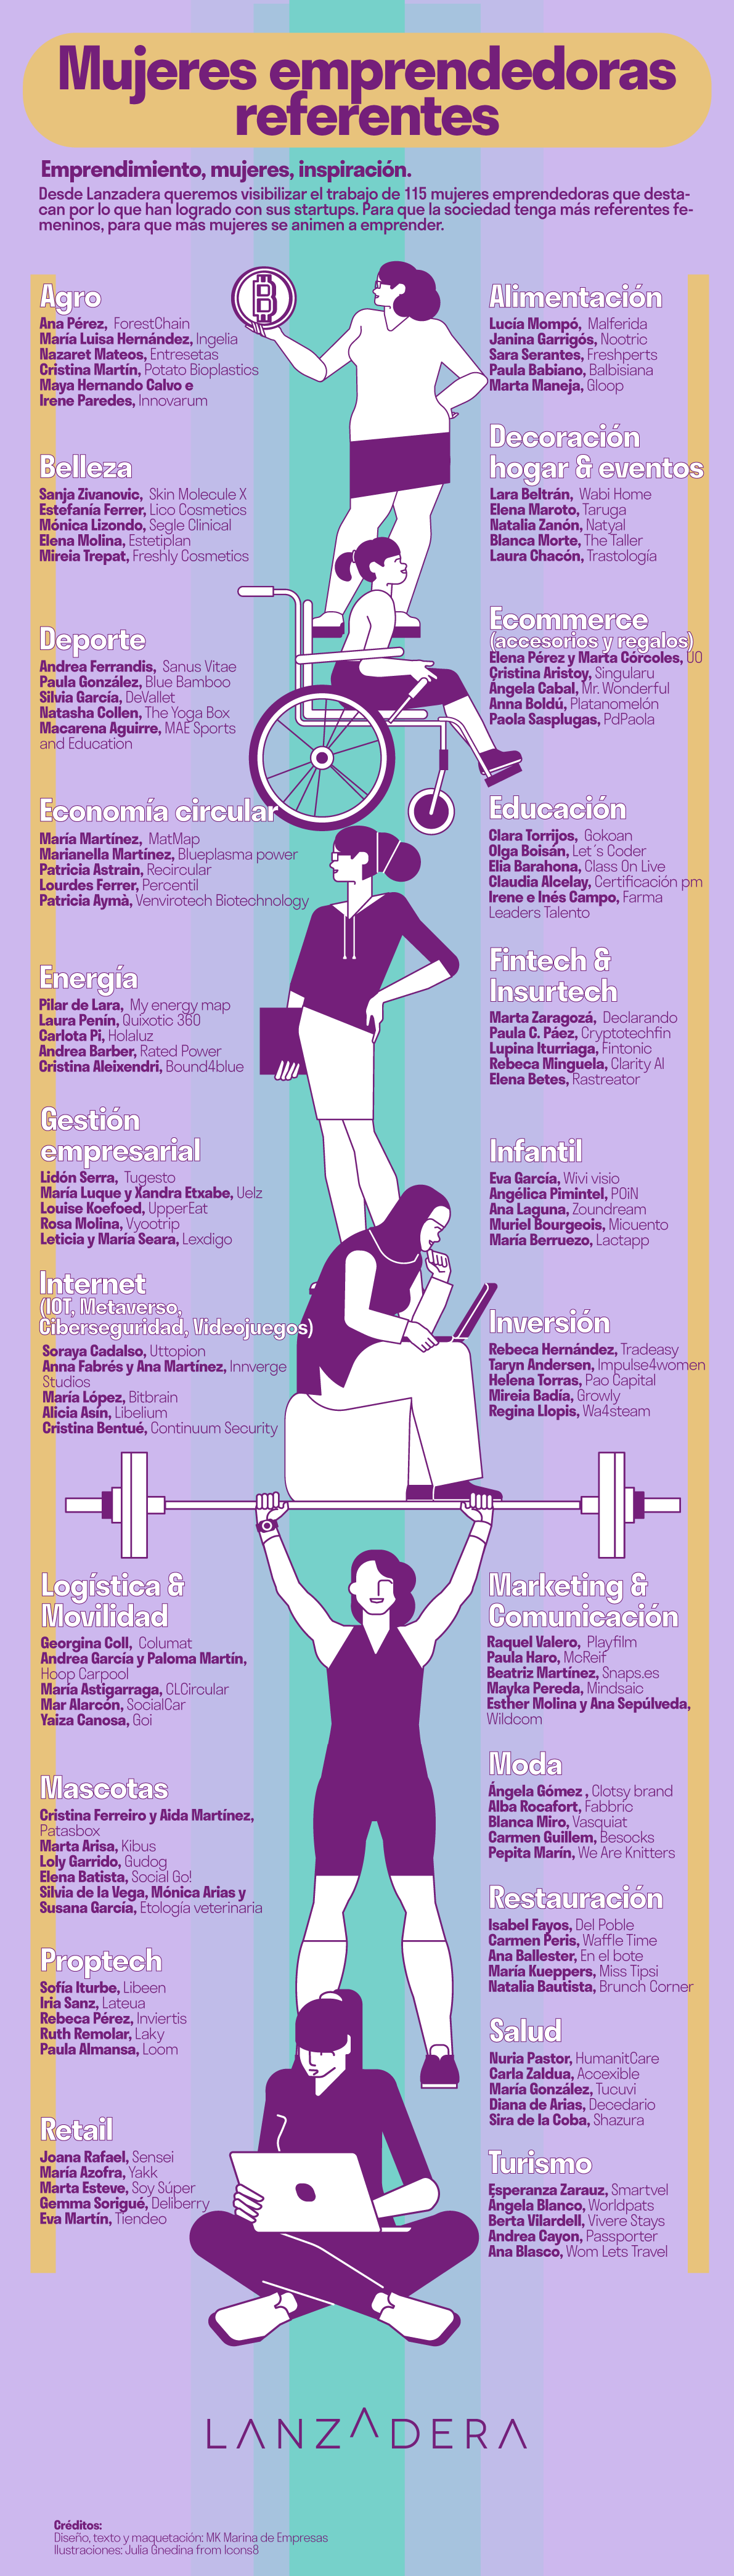 Infografía de mujeres referentes en emprendimiento